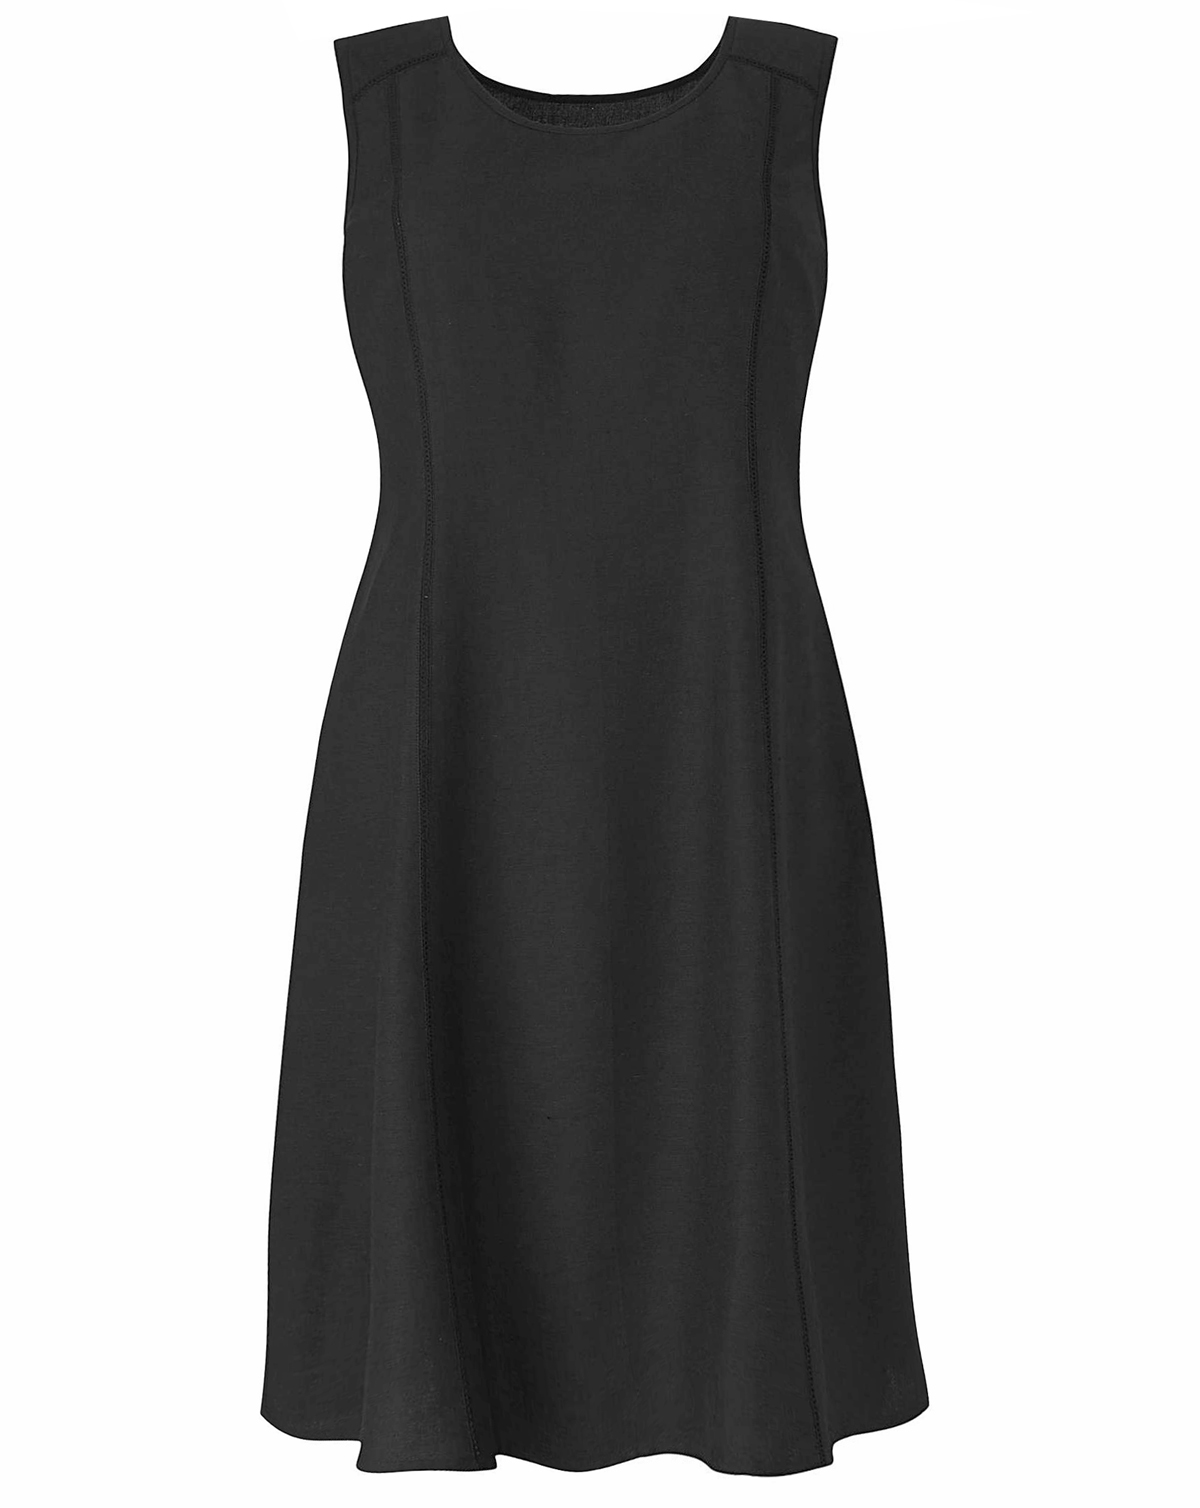 Label Be - - LabelBe BLACK Plain Linen Blend Dress - Plus Size 20 to 26